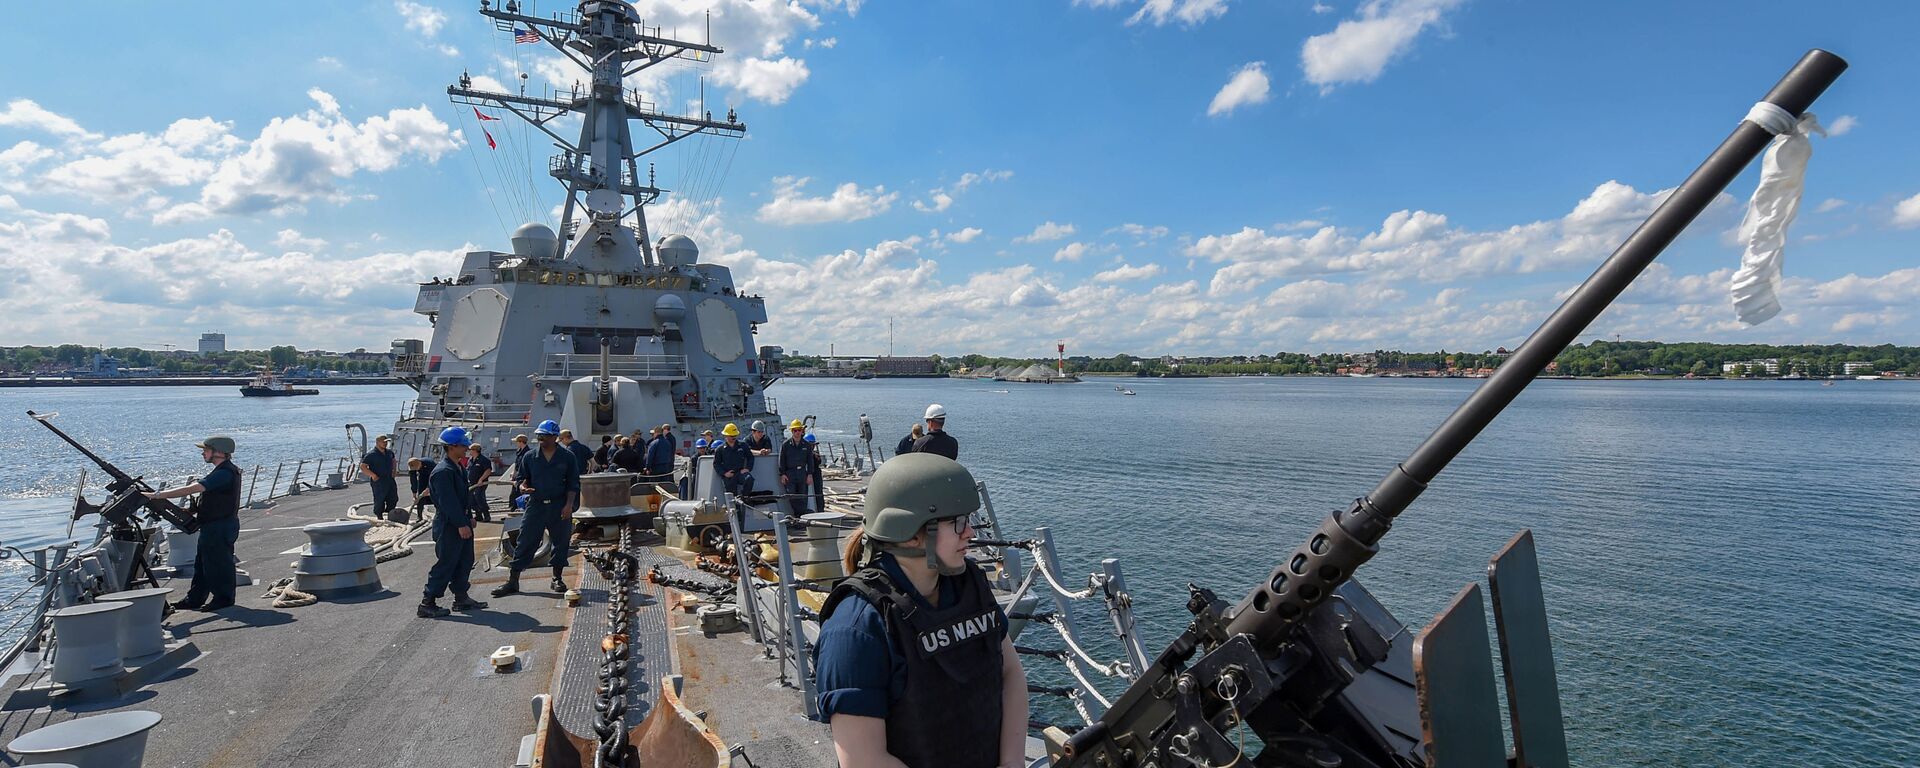 Ракетный эсминец USS Gravely отправляется из Киля (Германия) для участия в учениях НАТО BALTOPS - 2019, 9 июня 2019 года - Sputnik Литва, 1920, 08.06.2021